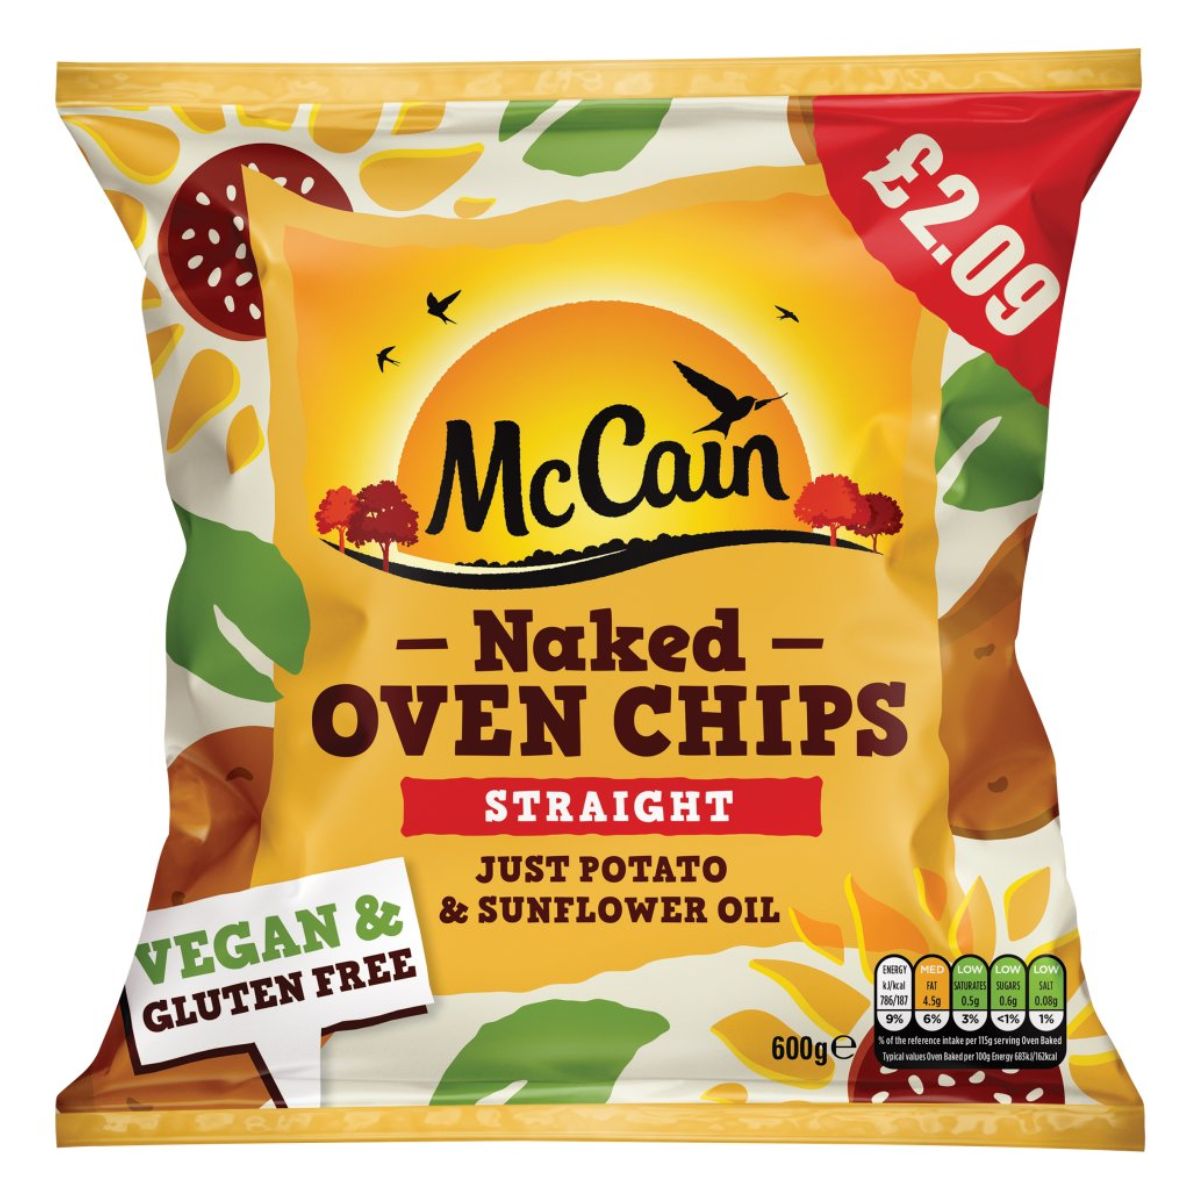 McCain - Naked Oven Chips Straight - 600g